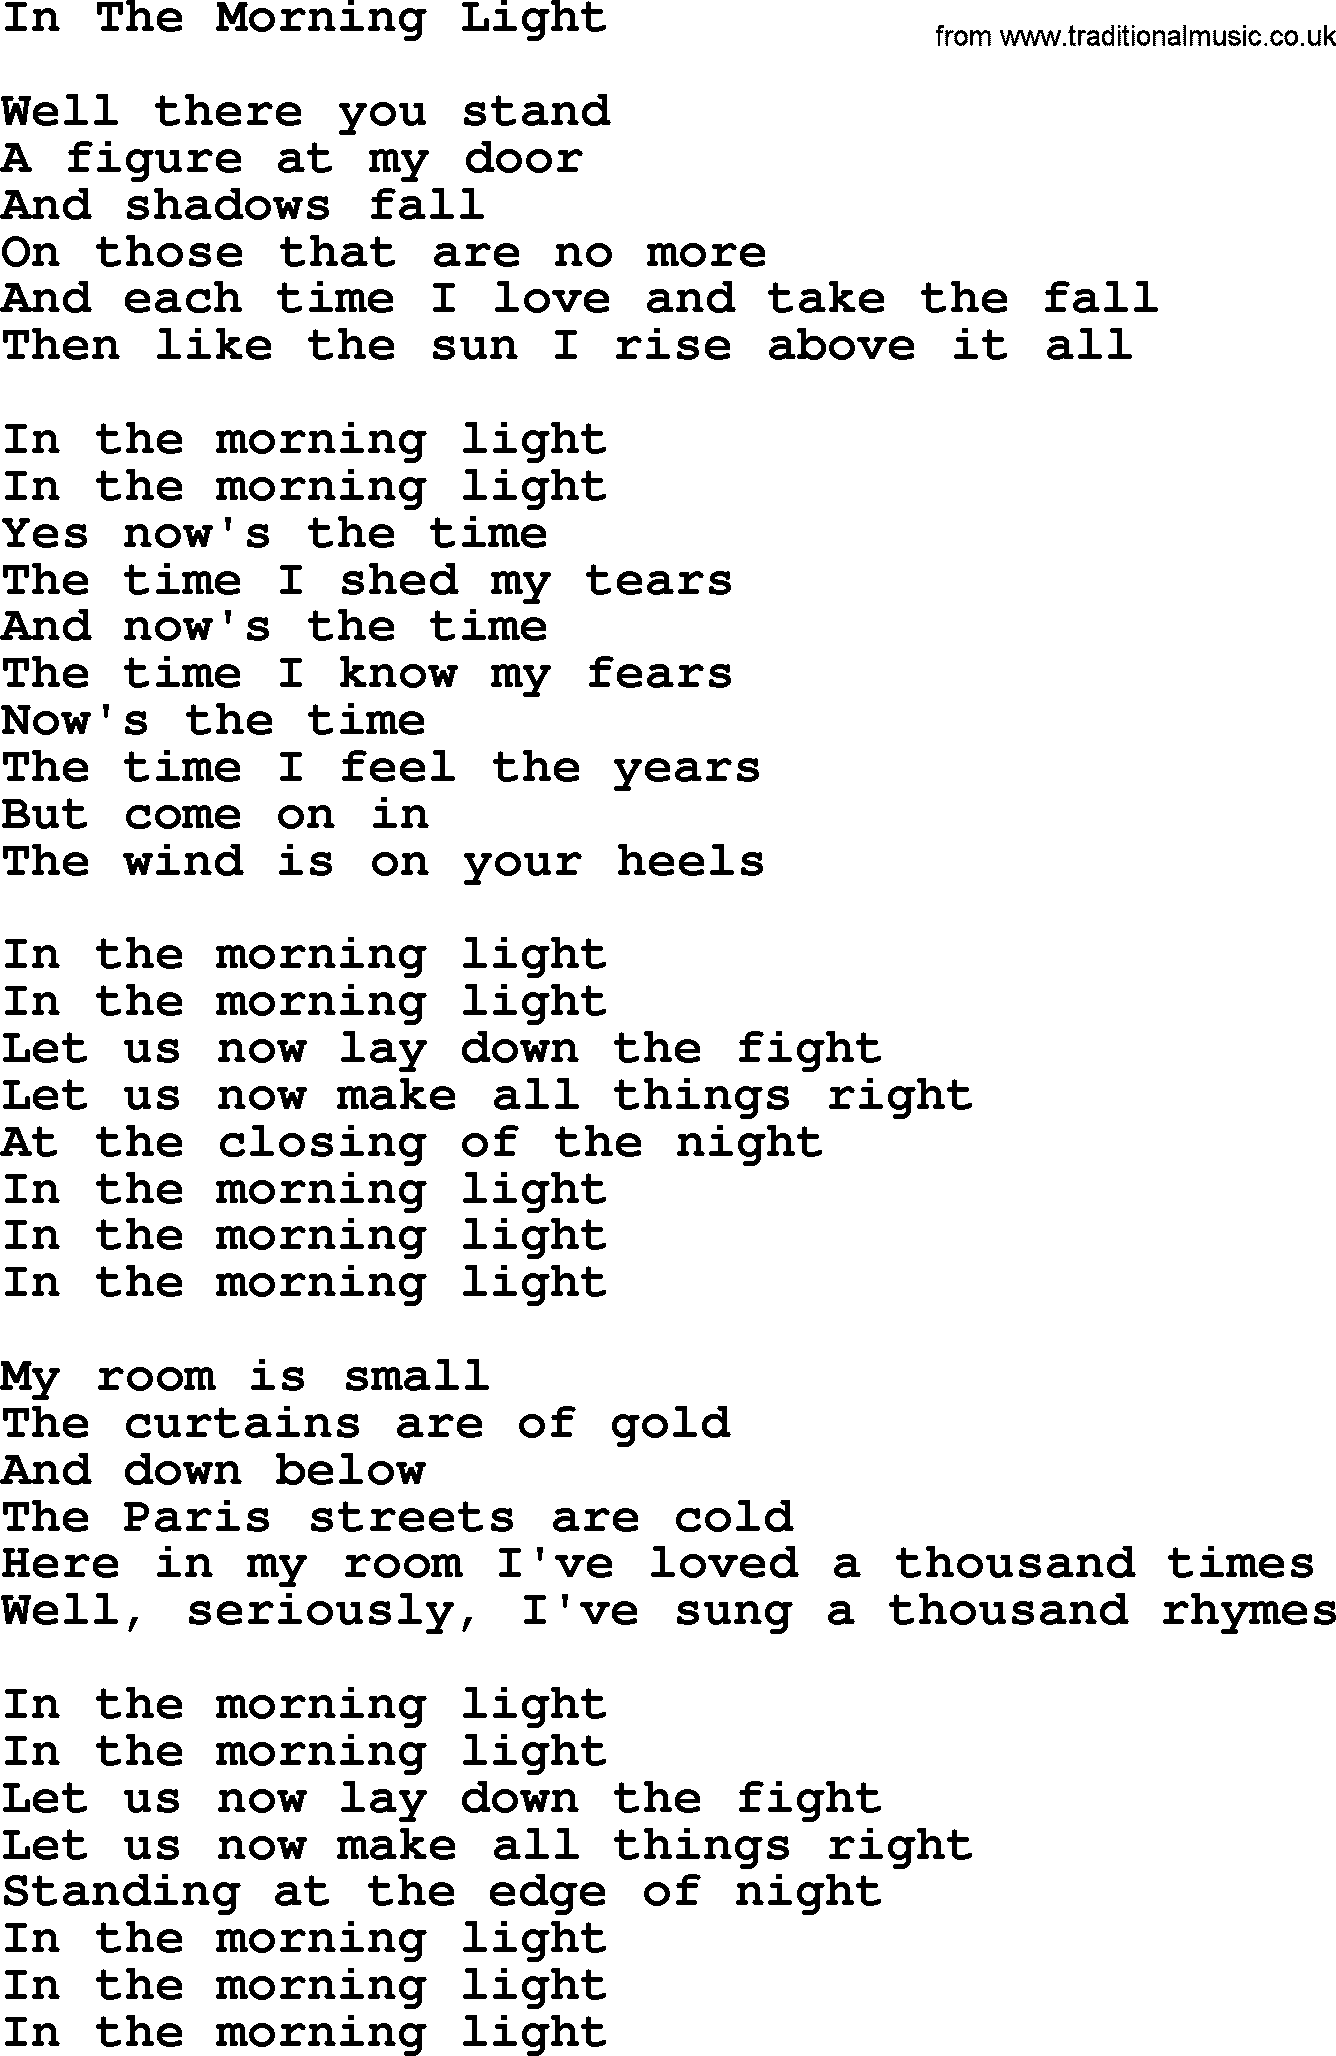 Joan Baez song In The Morning Light, lyrics